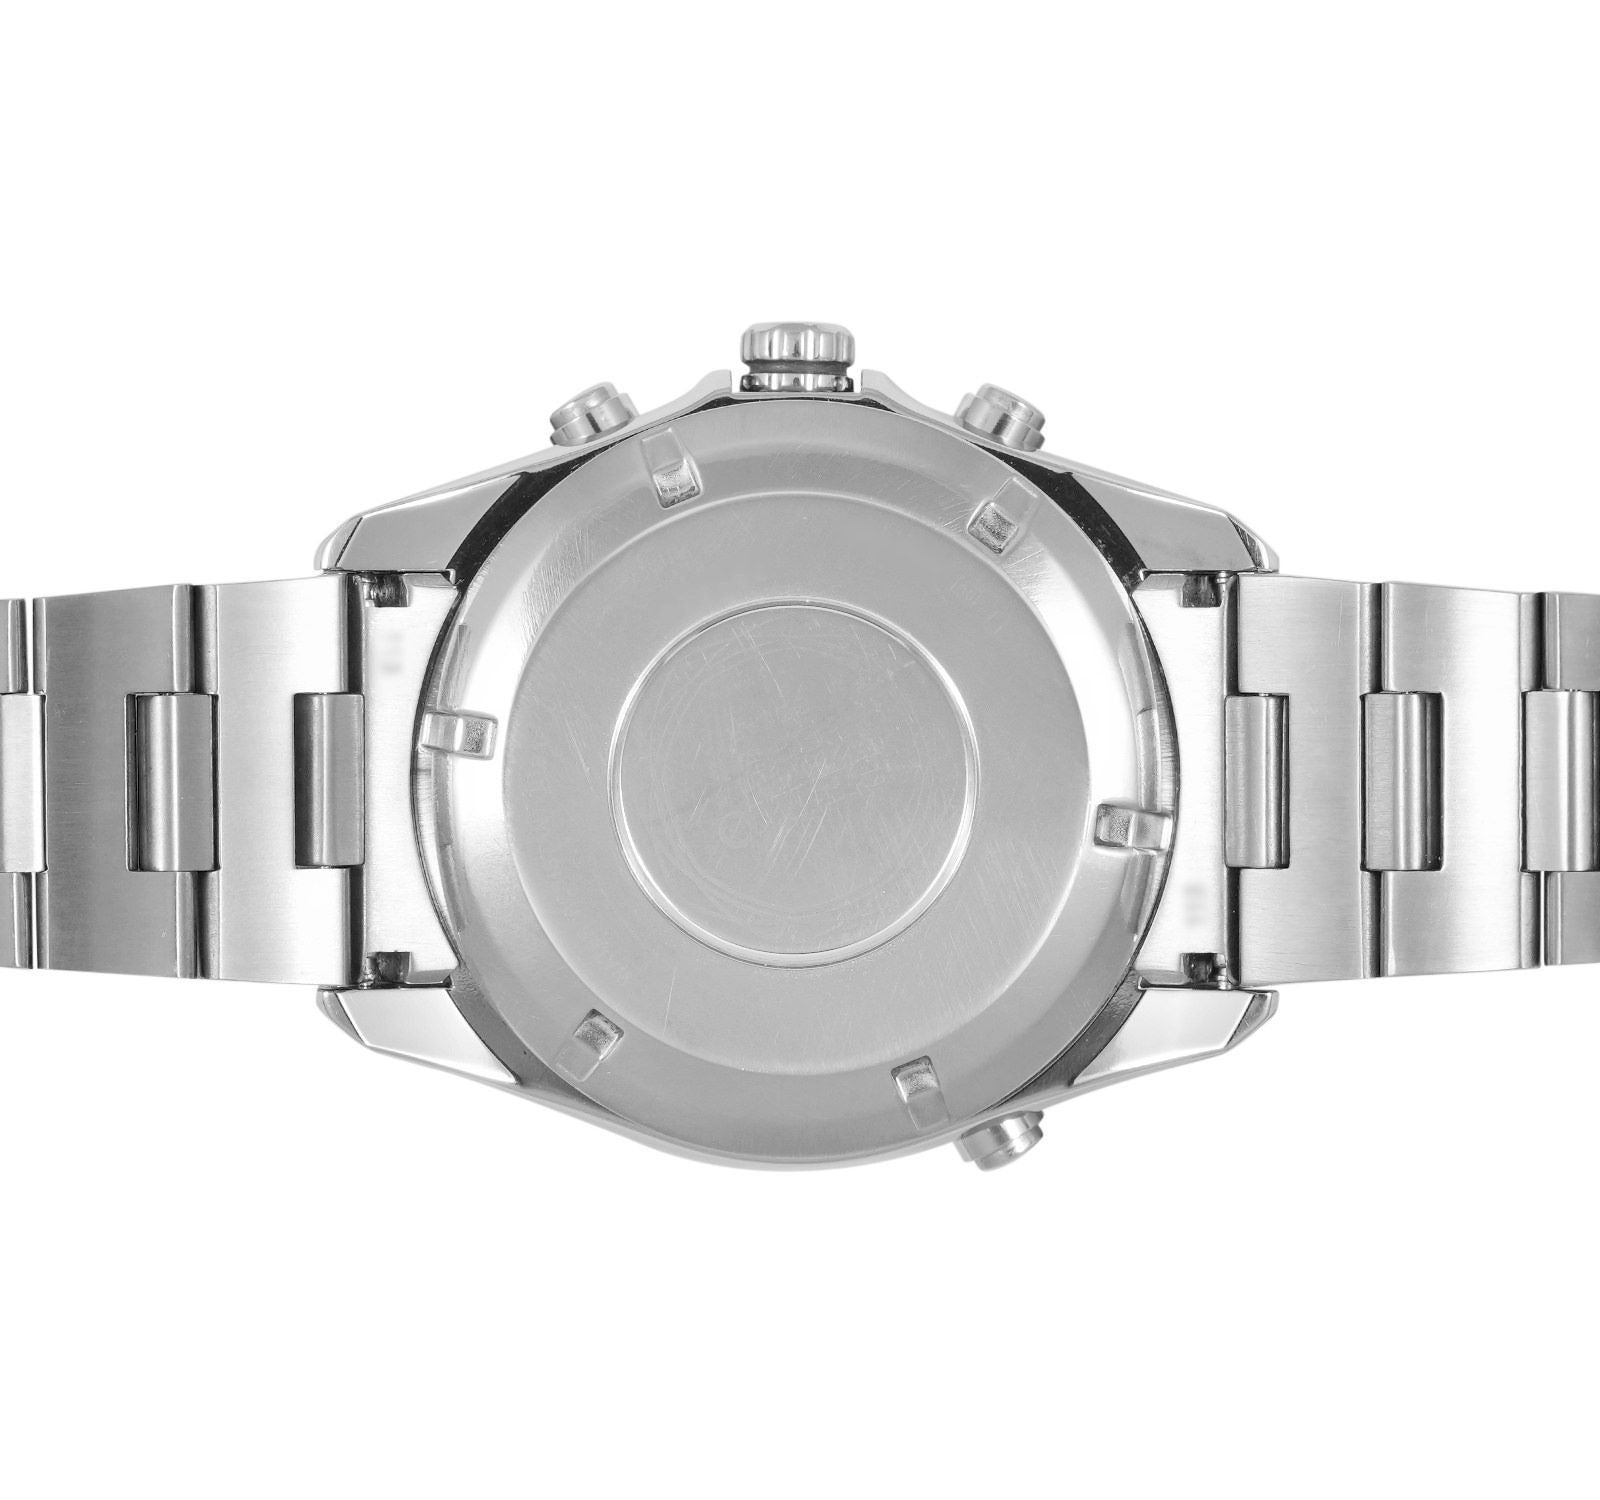 पूर्व स्वामित्व वाली सेइको एस्ट्रोन मेन घड़ी SAST005G-G15A